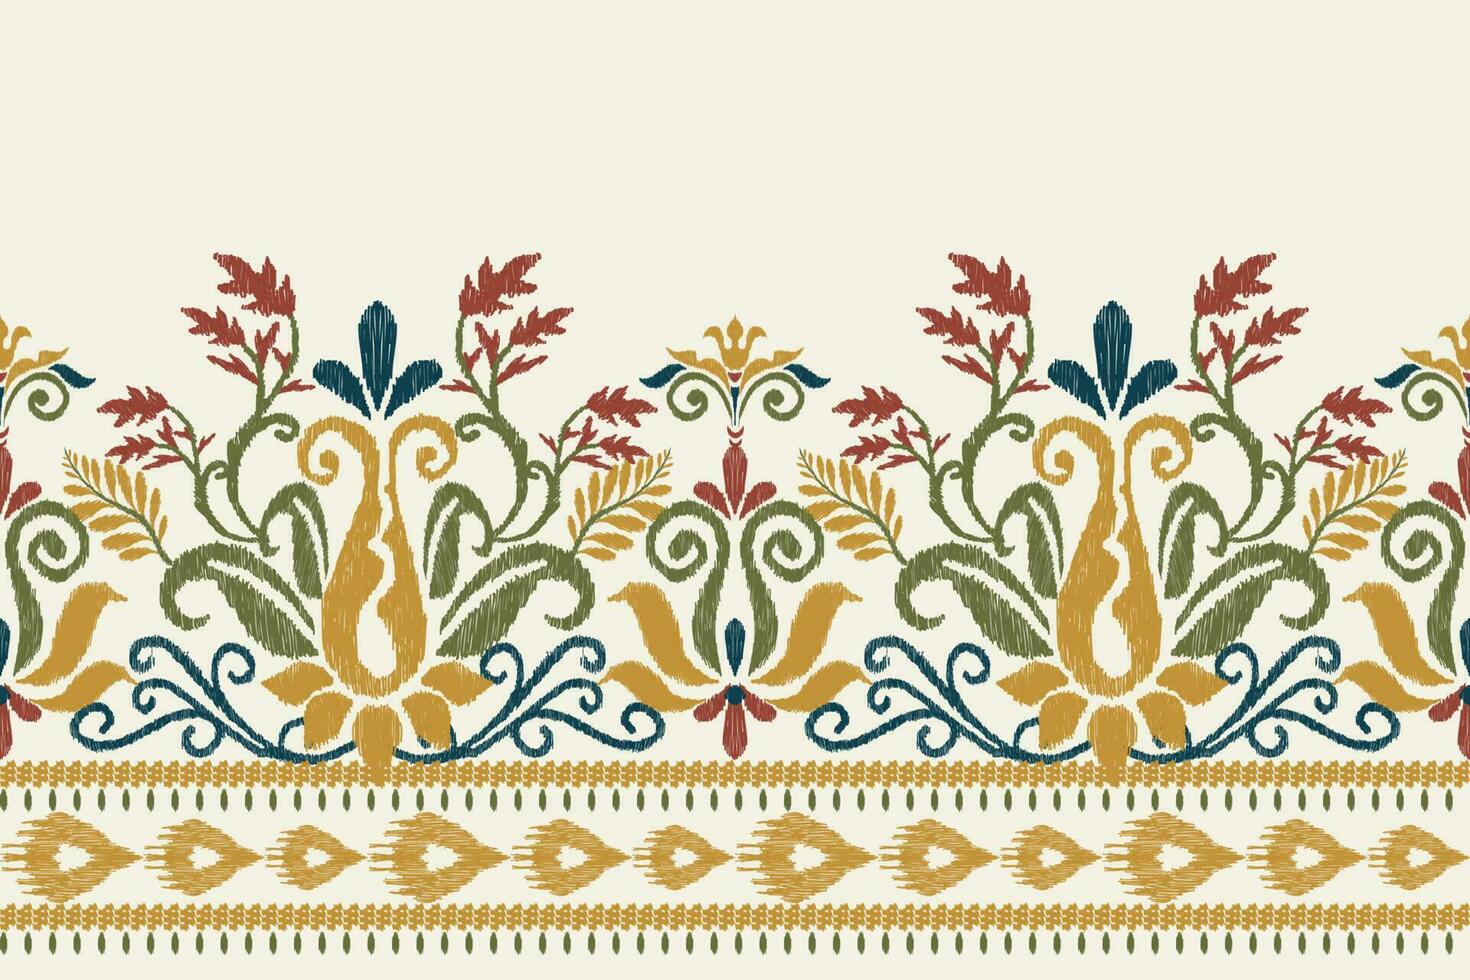 Ikat Blumen- Paisley Stickerei auf Weiß hintergrund.ikat ethnisch orientalisch Muster traditionell.aztekisch Stil abstrakt Vektor illustration.design zum Textur, Stoff, Kleidung, Verpackung, Dekoration, Sarong, Schal